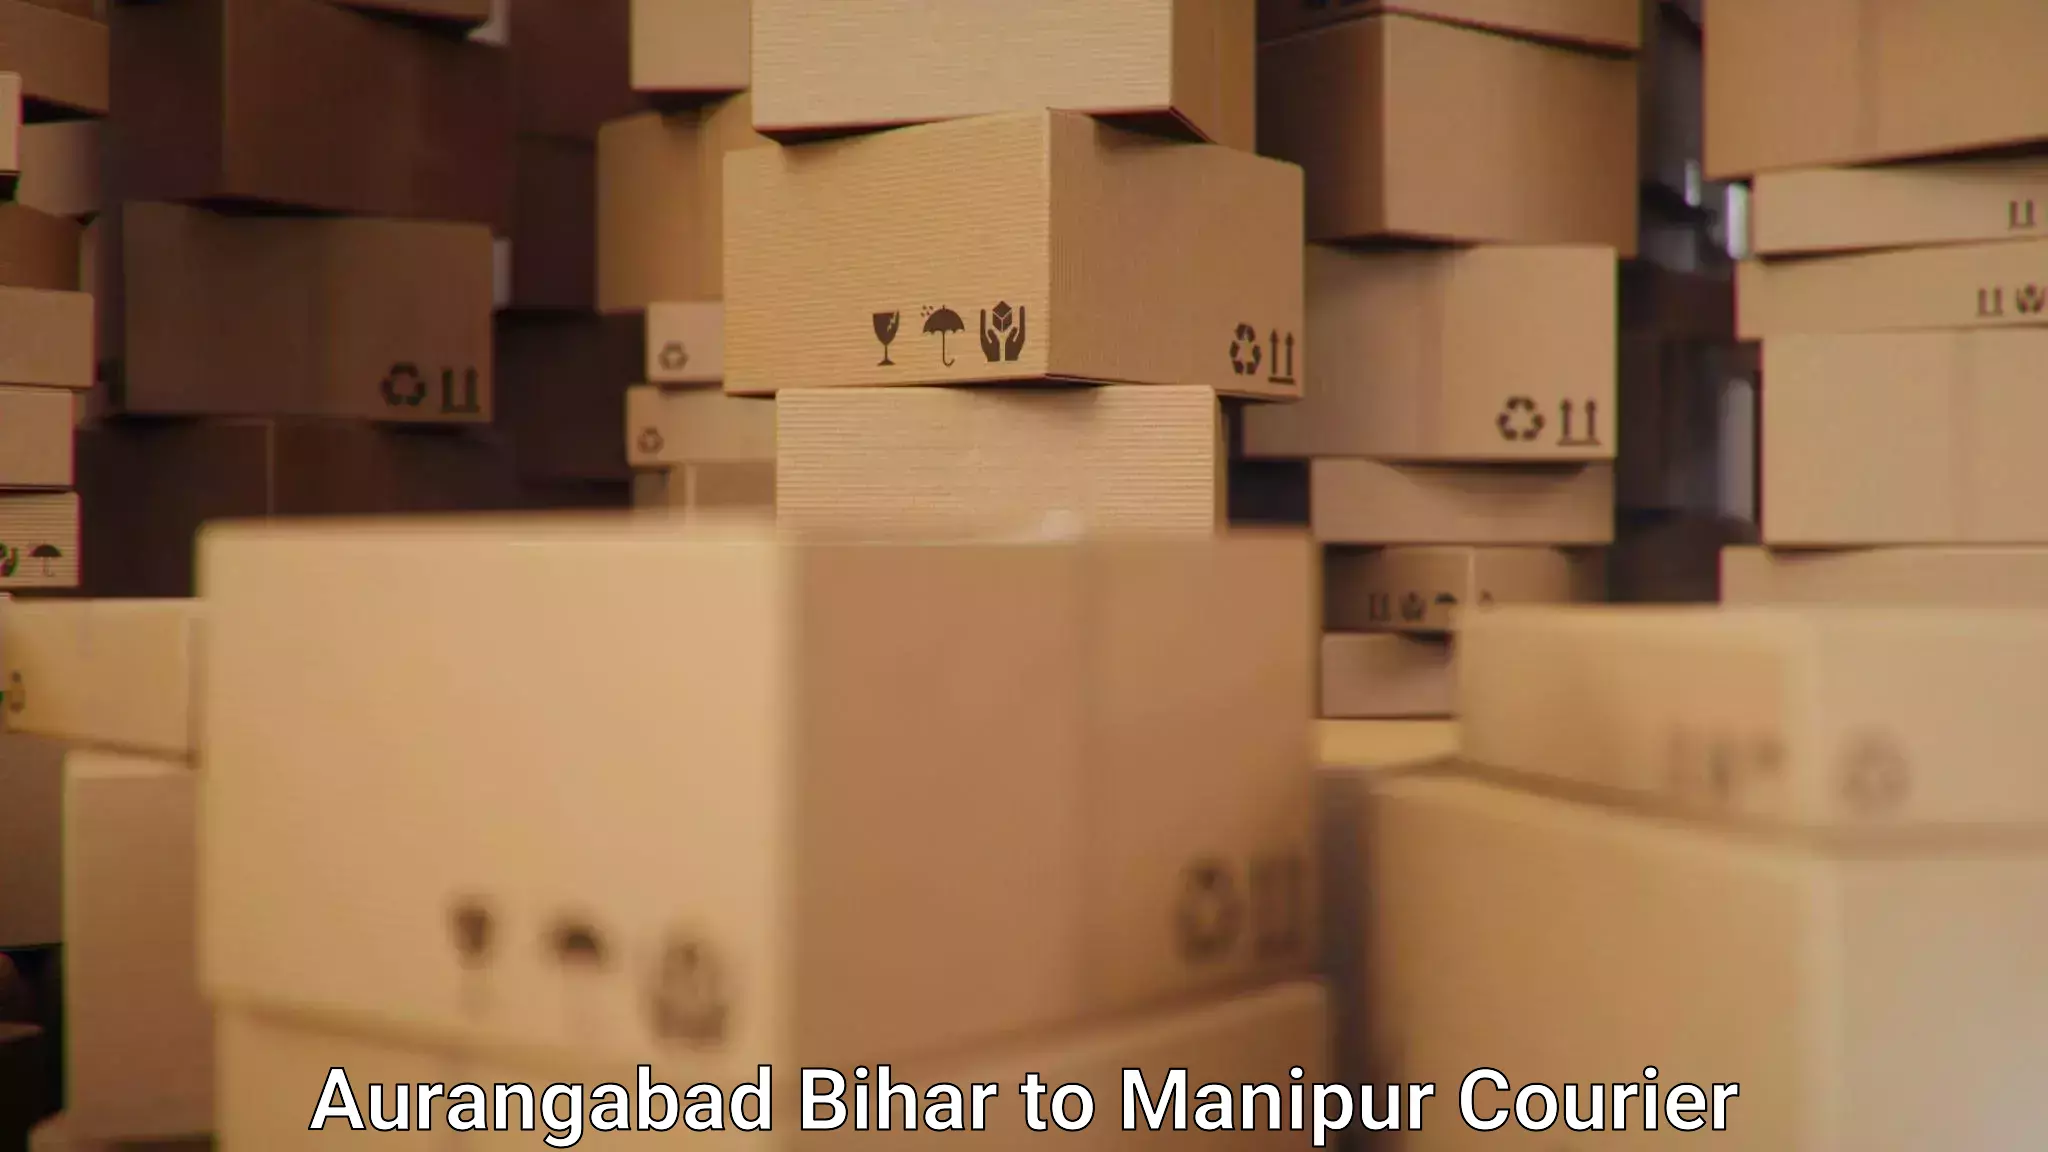 Reliable delivery network Aurangabad Bihar to Thoubal